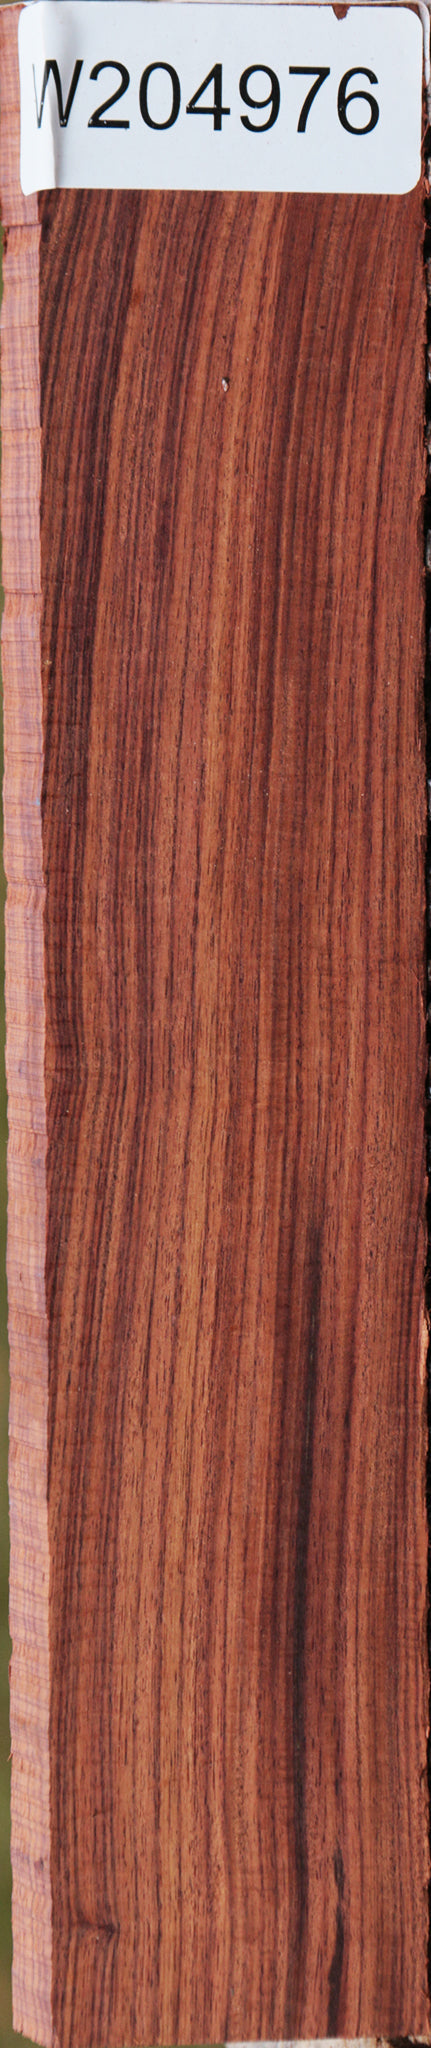 Kingwood Lumber